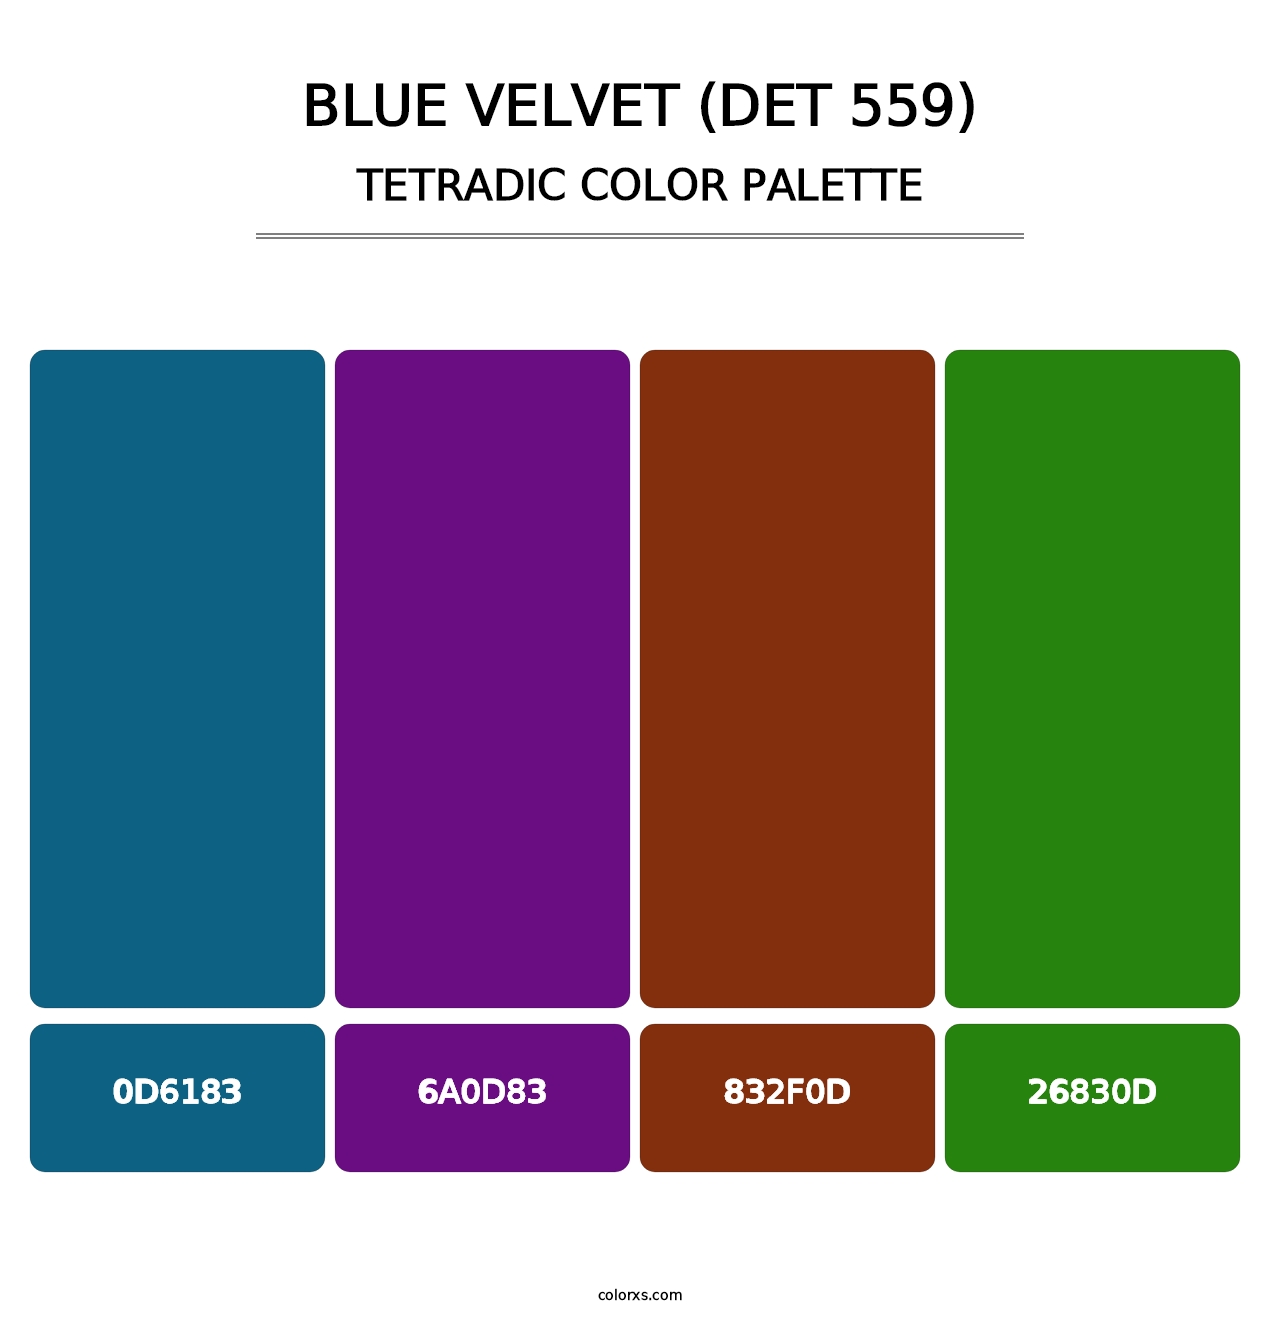 Blue Velvet (DET 559) - Tetradic Color Palette